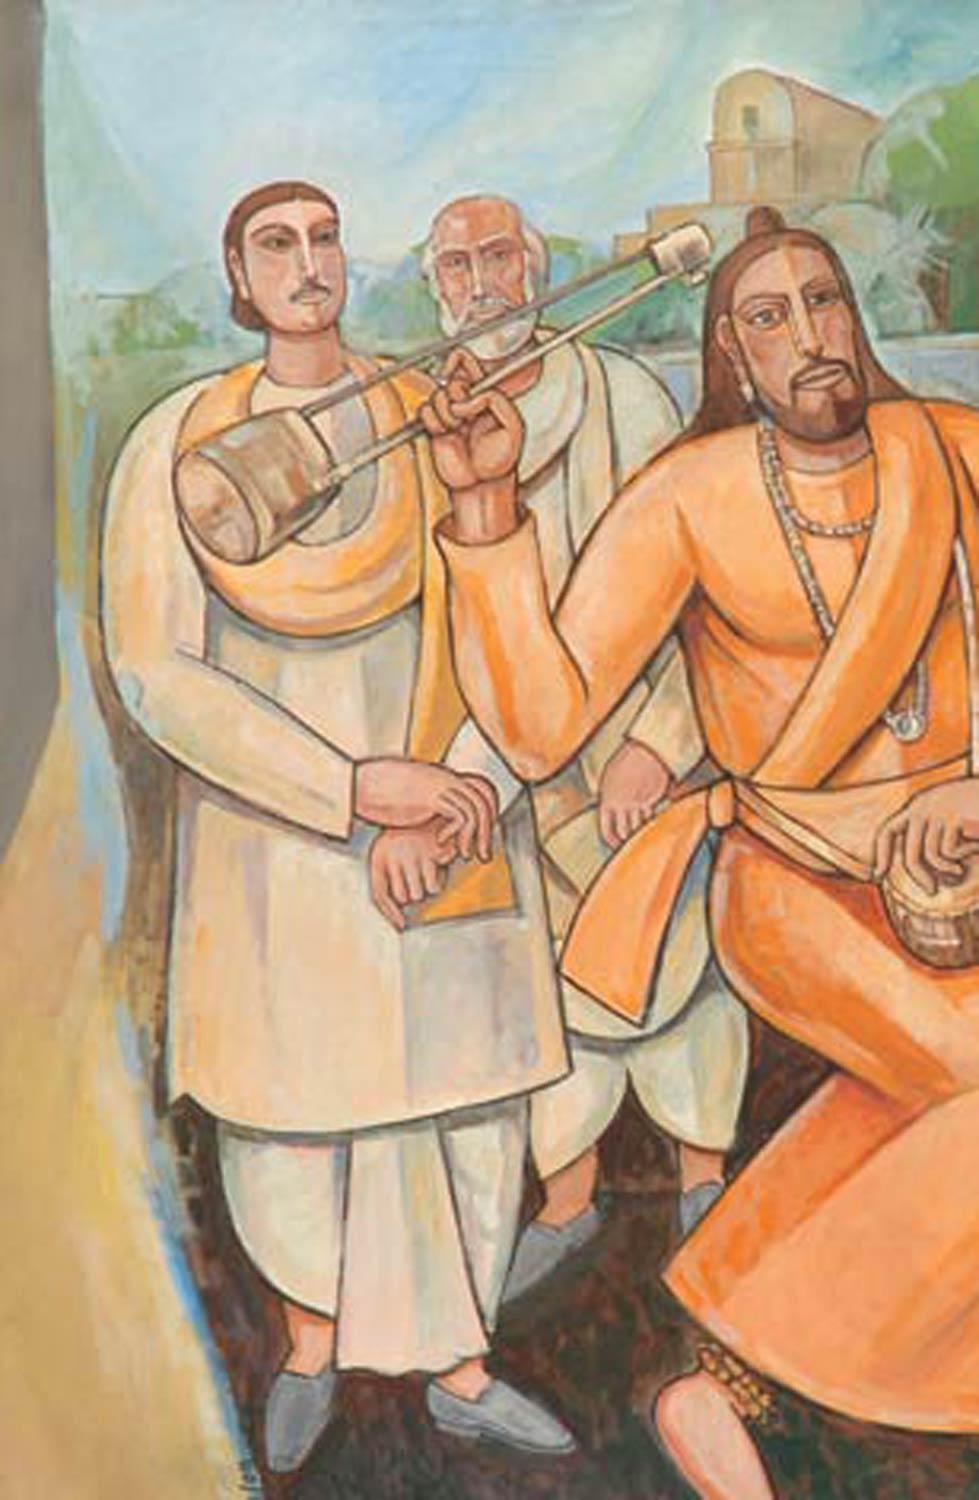 Bijan Choudhury - Raga - 48 x 48 pouces (taille non encadrée)
Huile et acrylique sur toile
Y compris l'expédition en rouleau.

Style : L'orientation marxiste n'a pas permis à Bijan Chowdhury 